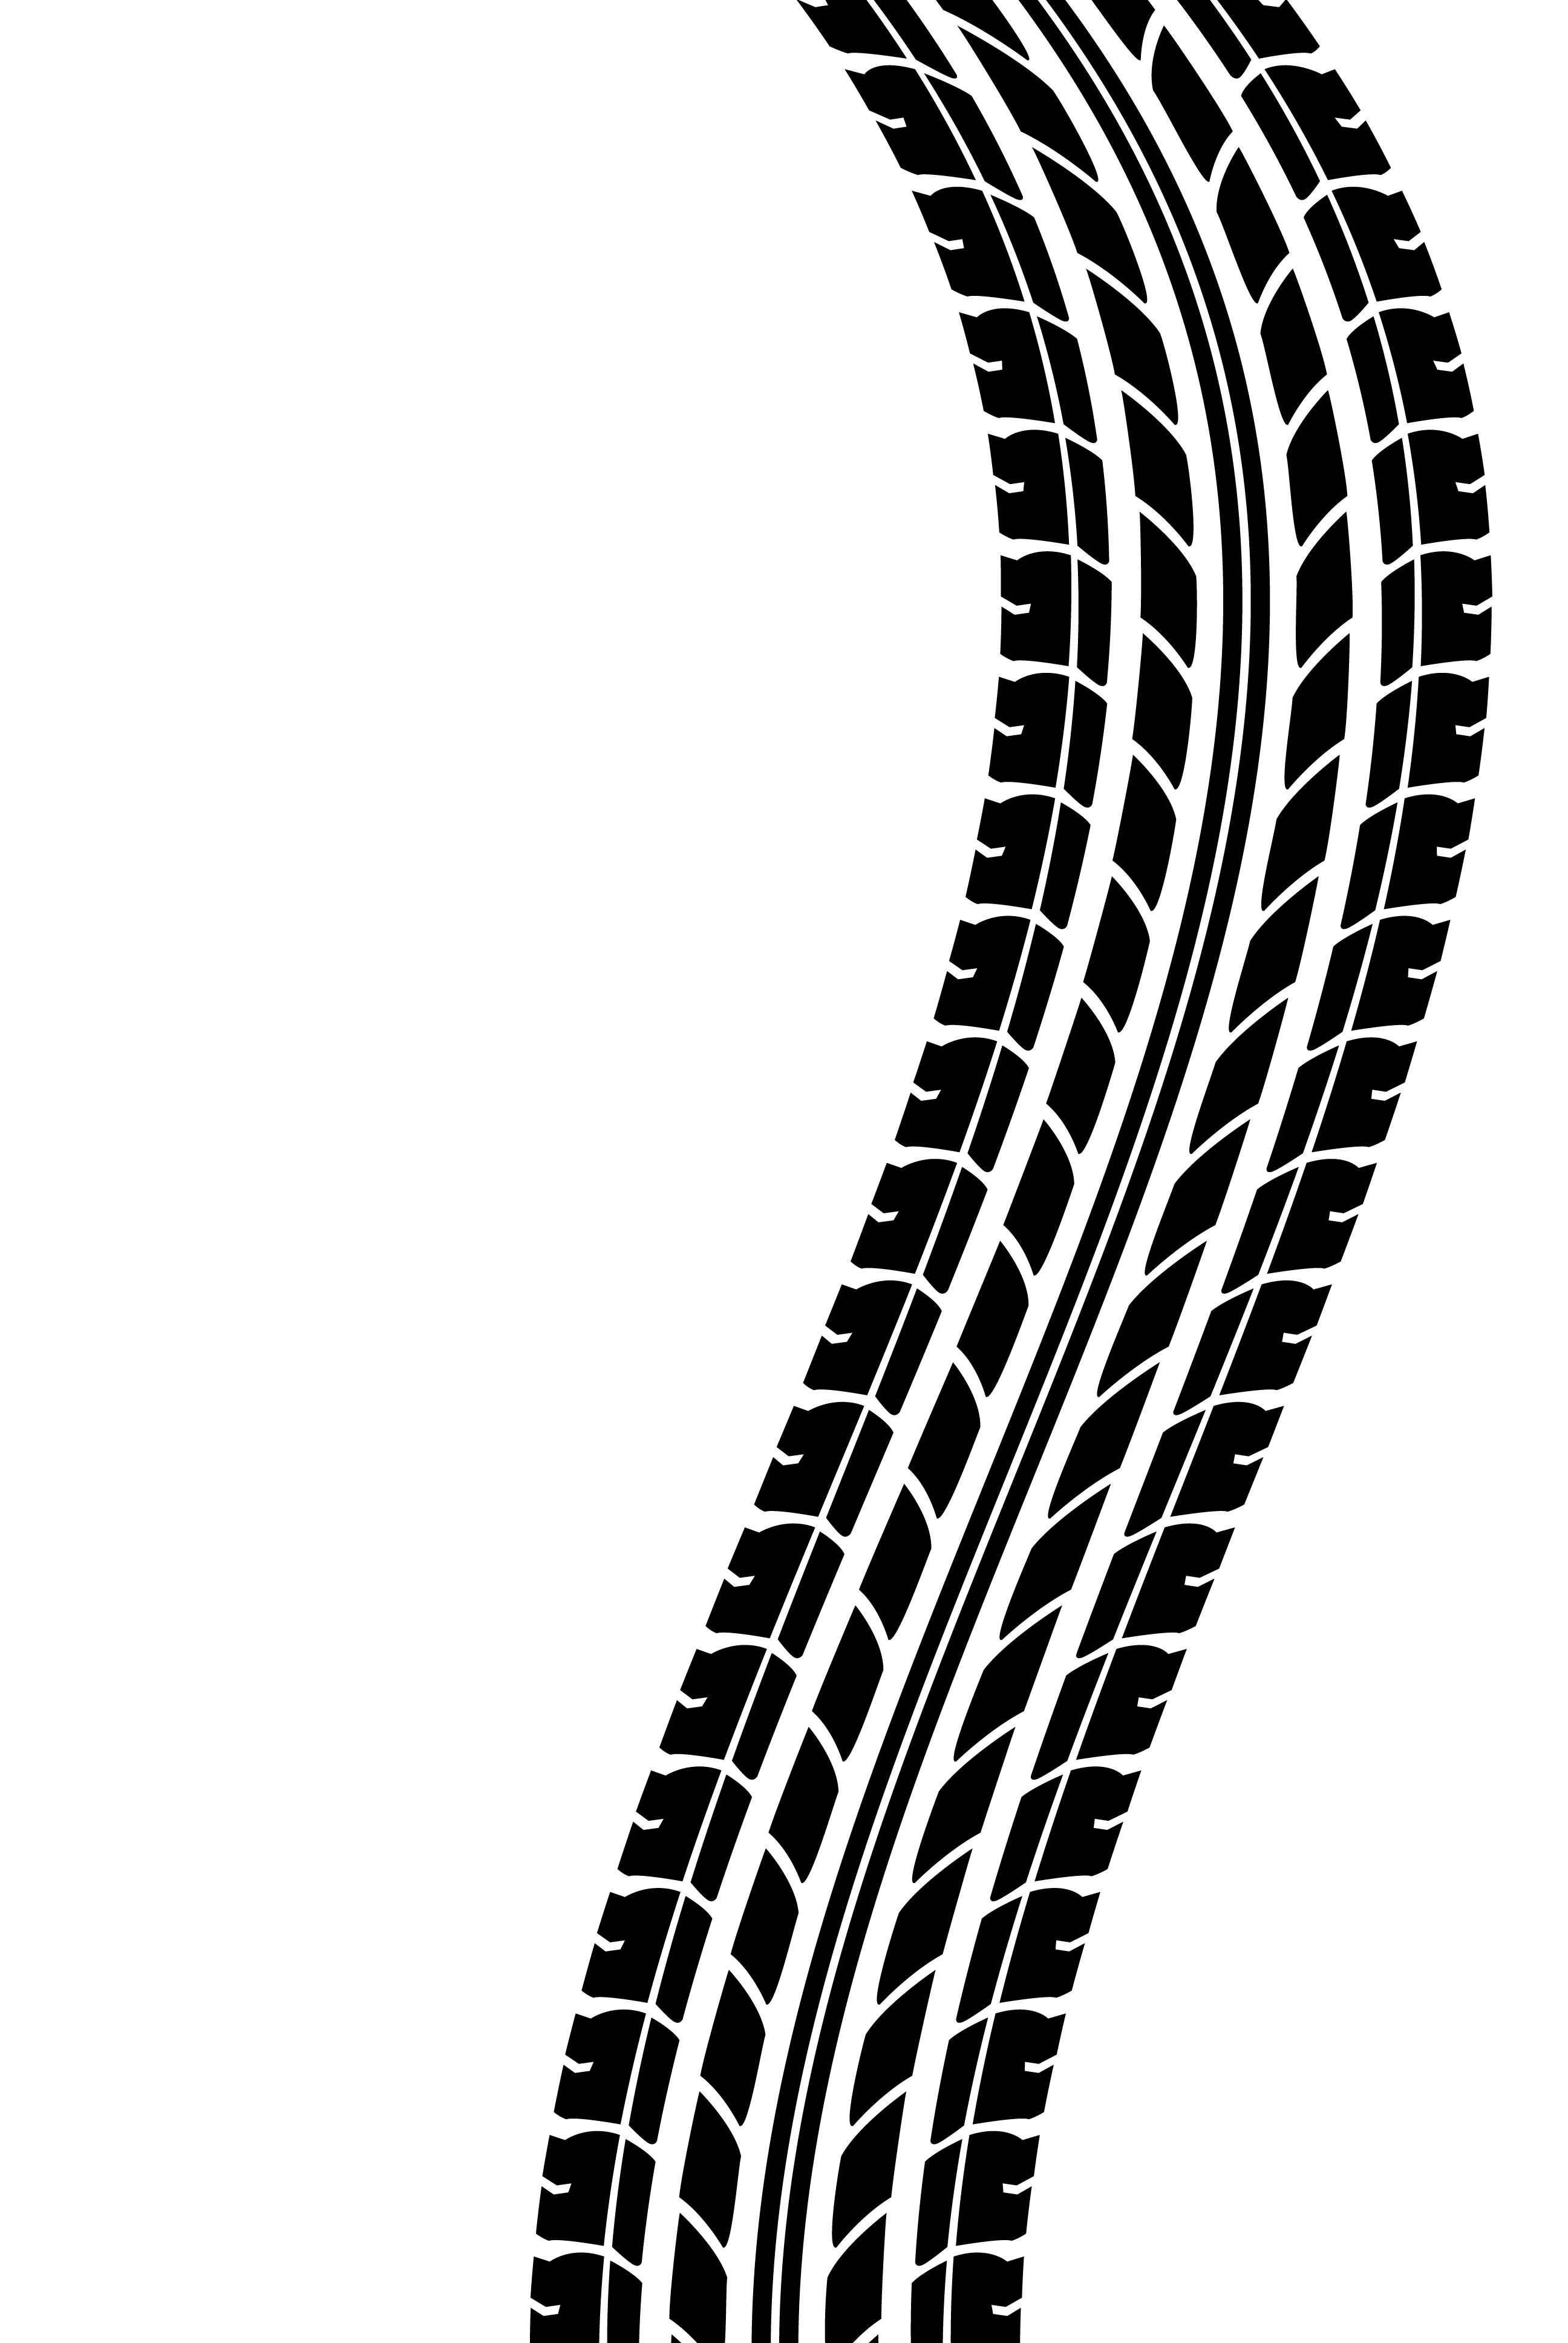 Tire Tracks Clip Art Cliparts Co